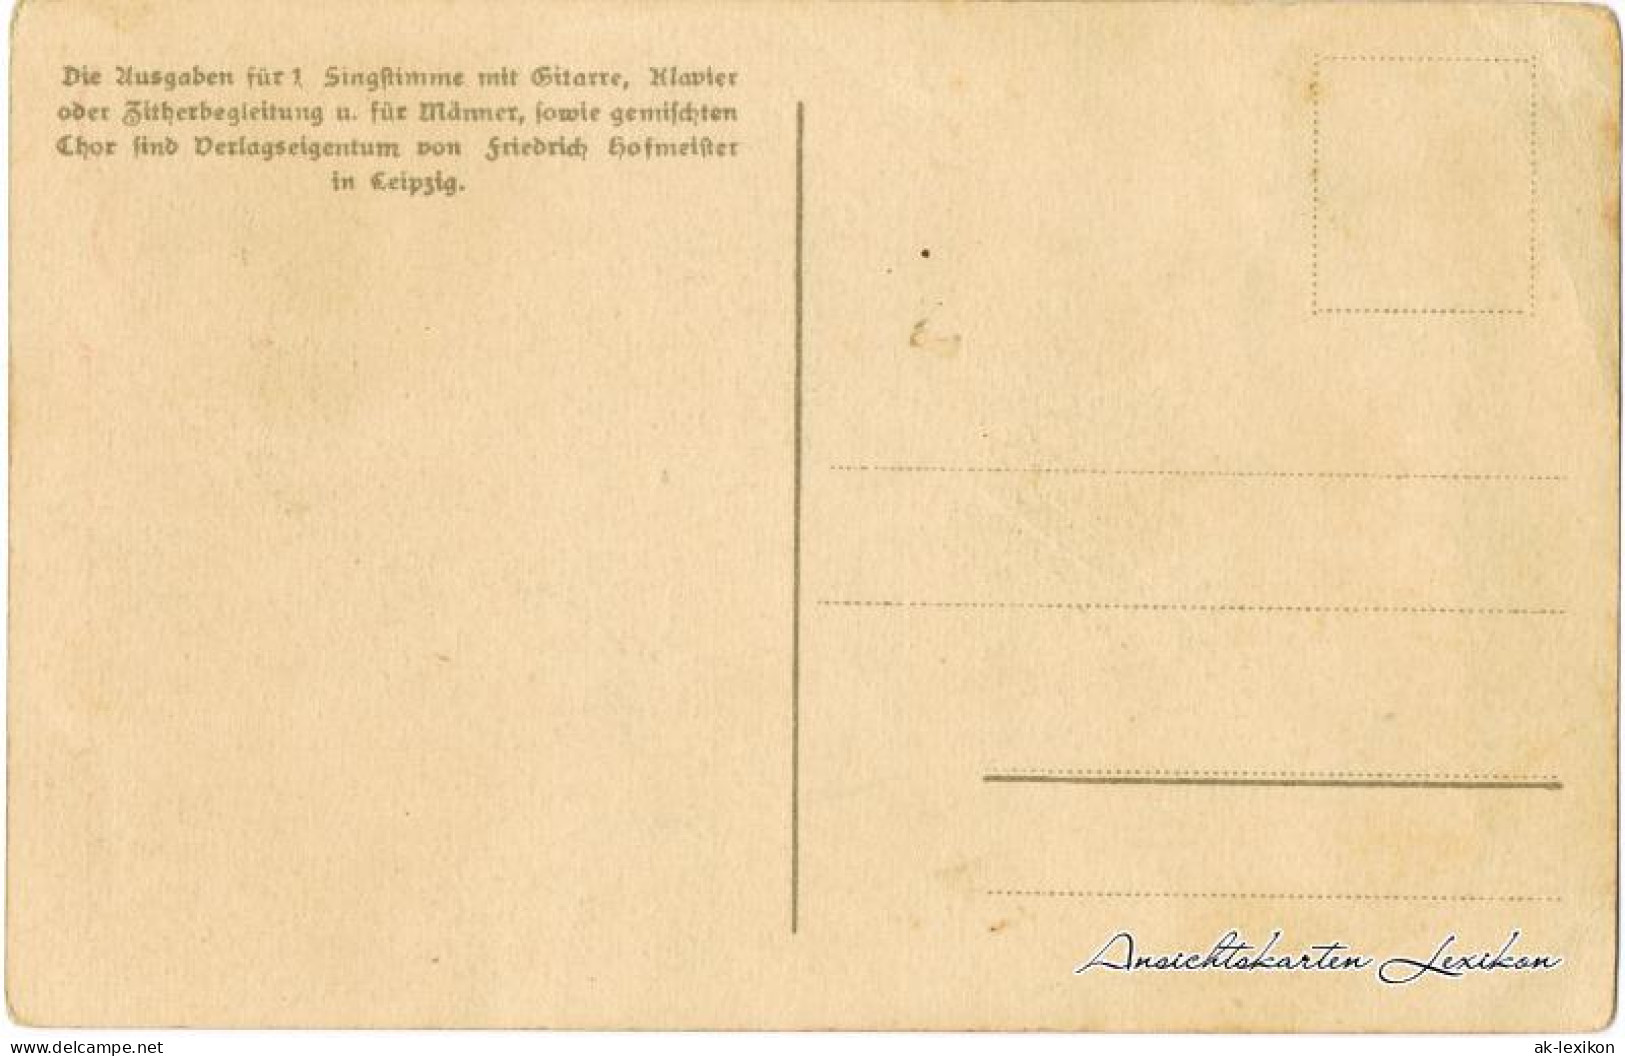  Liedkarte - Vergass Dei Hamit Net! 1906 Erzgebirge, Anton Günther Gottesgab:47  - Musik